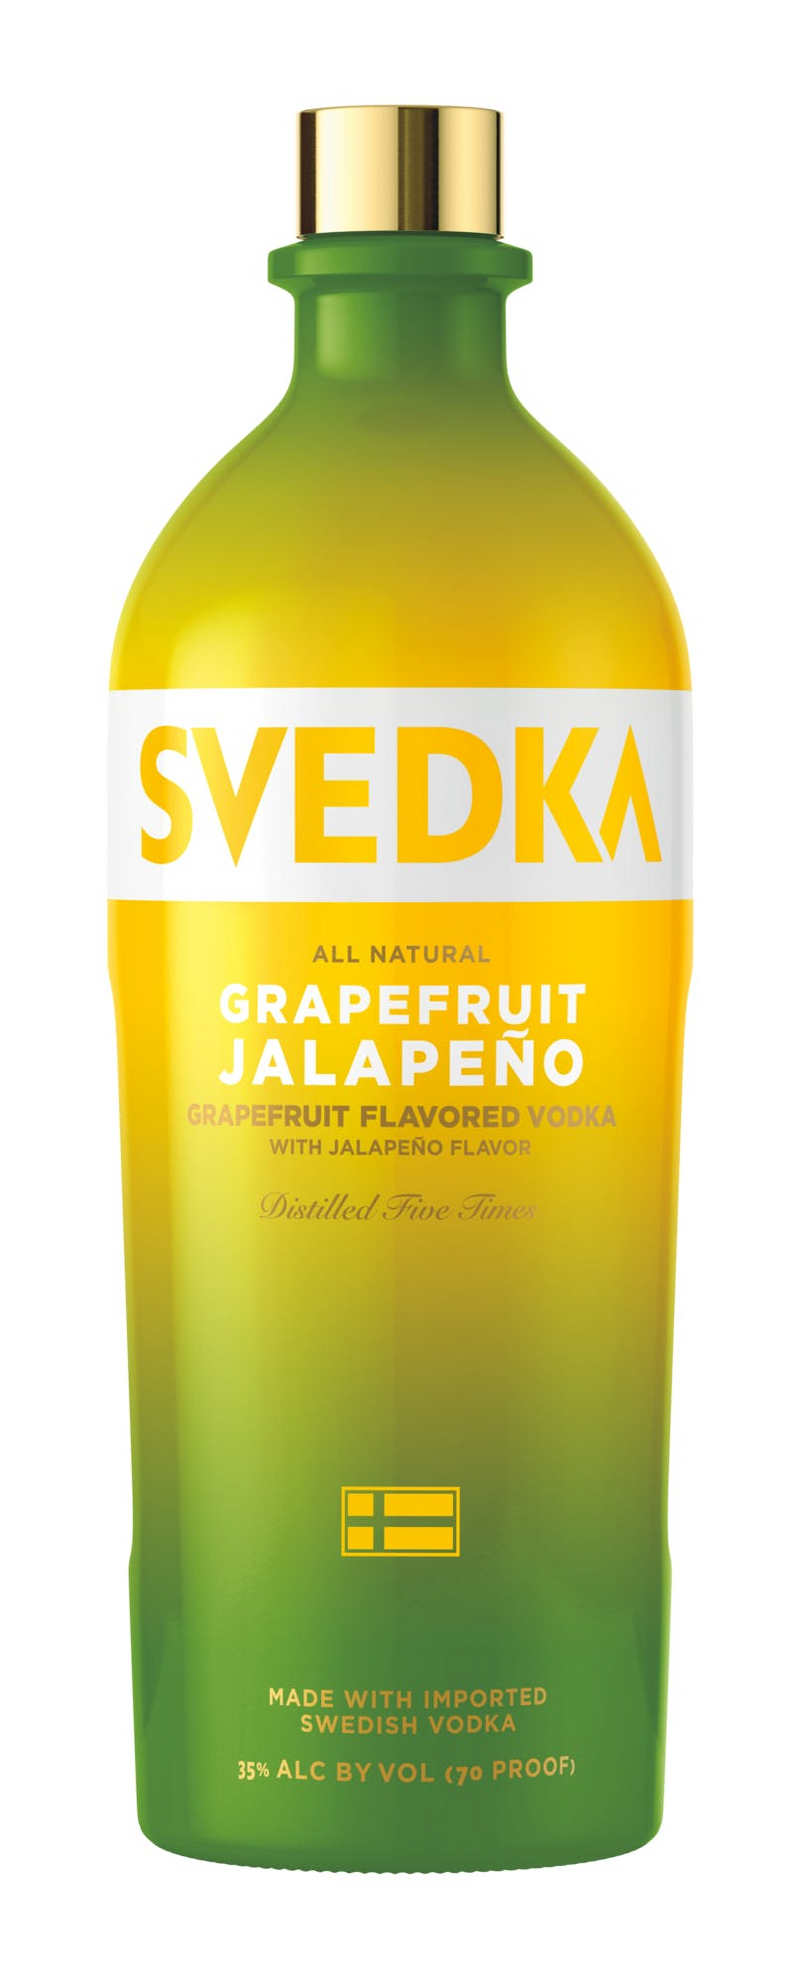 Svedka Grapefruit Jalapeno Flavored Vodka 750ml